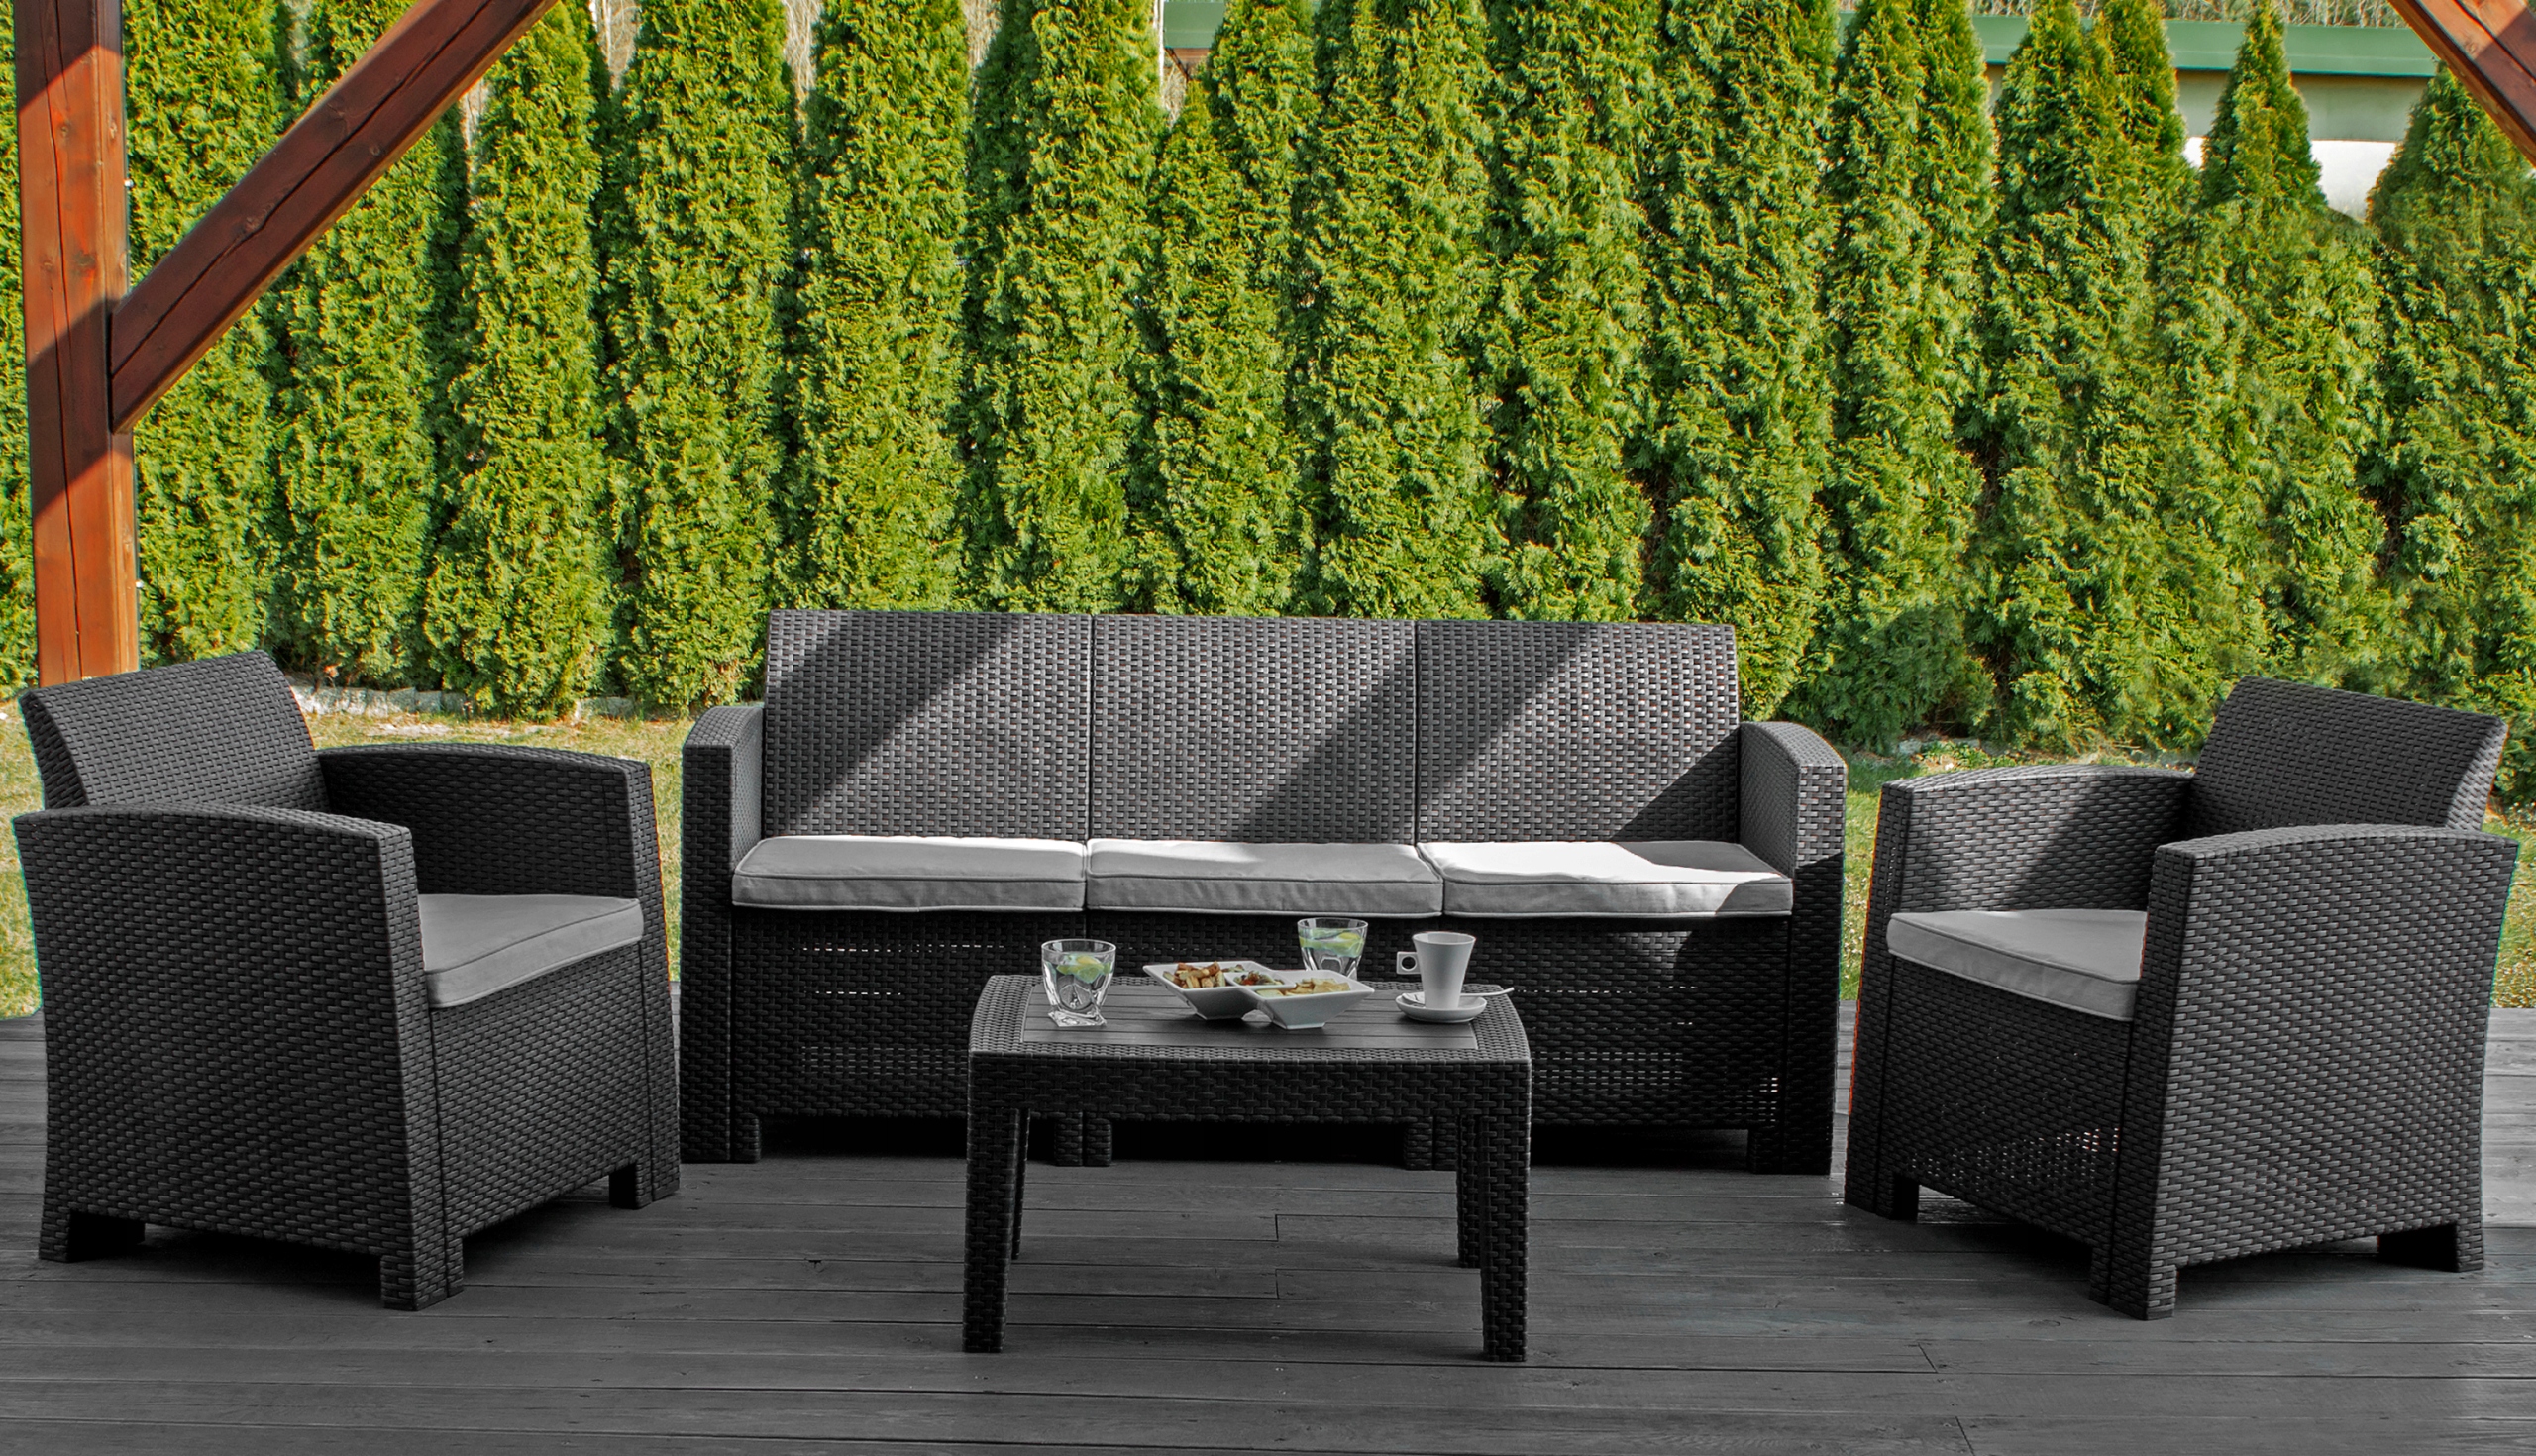 Zestaw mebli ogrodowych Sapphire ST-1550 Venice - stolik + sofa + 2 fotele